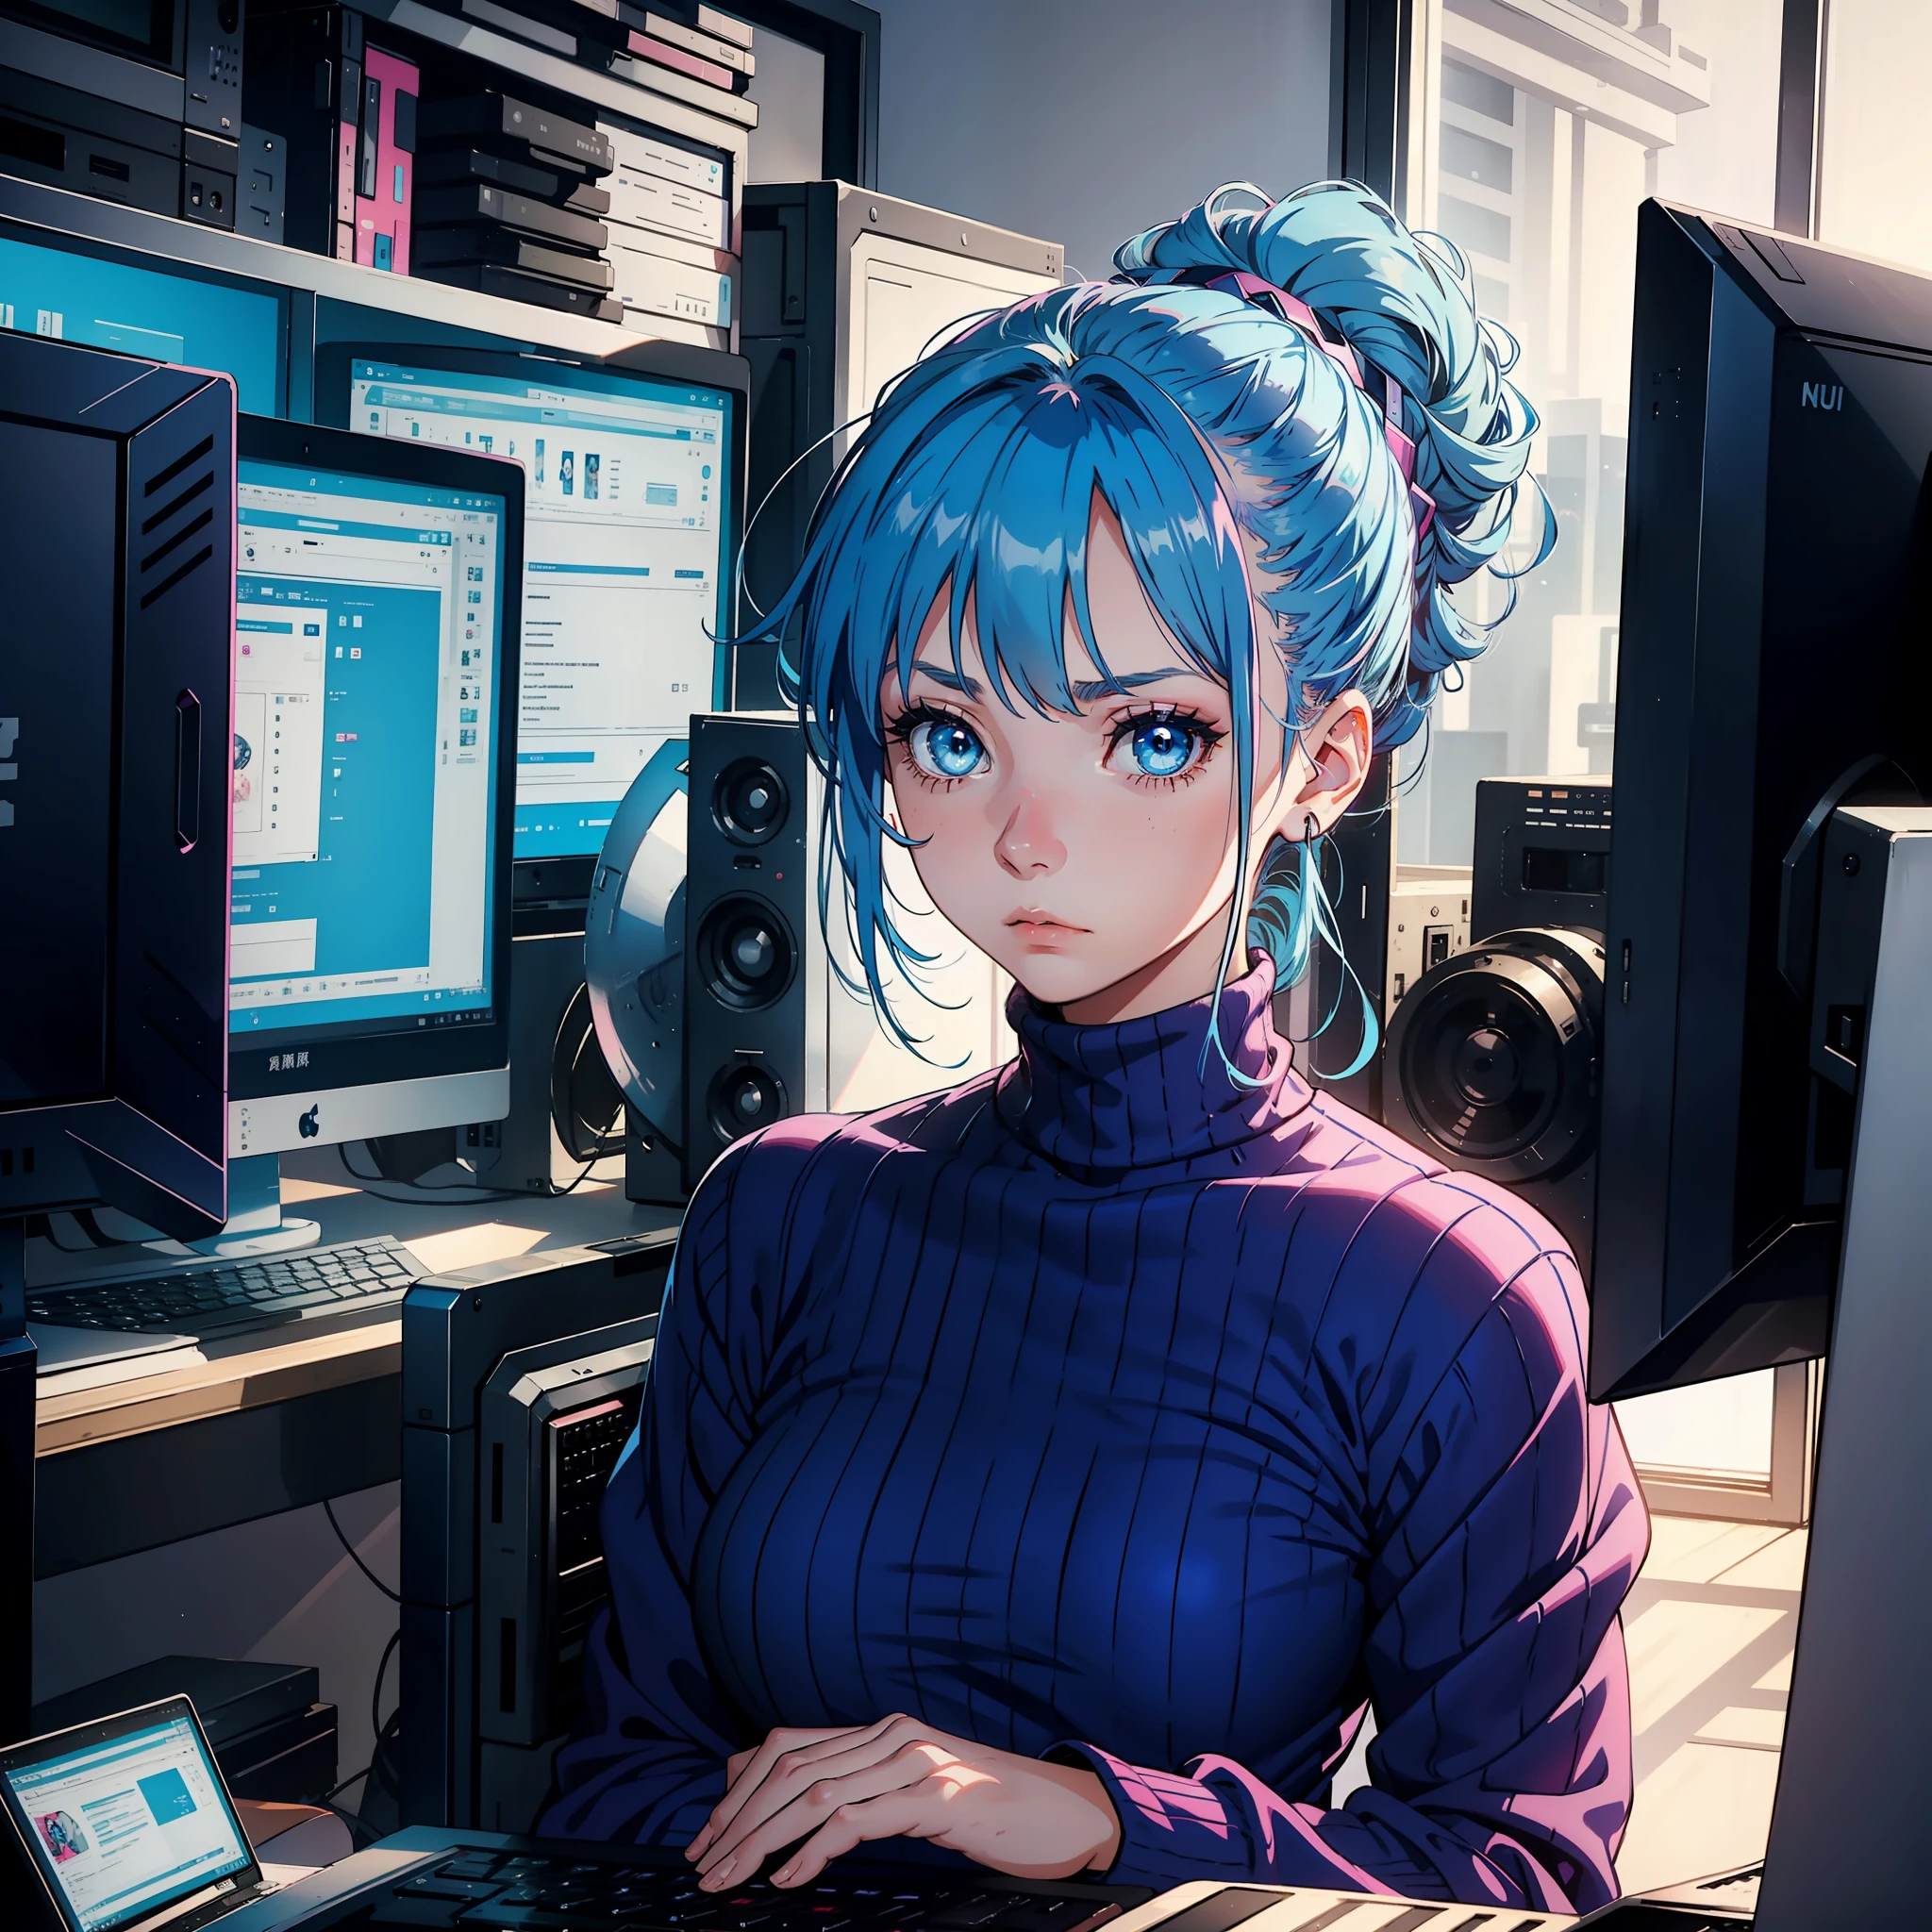 Una chica de 20 años con cabello azul, blue eyes, recogido, Vestido rosa cuello alto, mirando la pantalla de la computadora, expresión triste, Cabeza abajo, solo